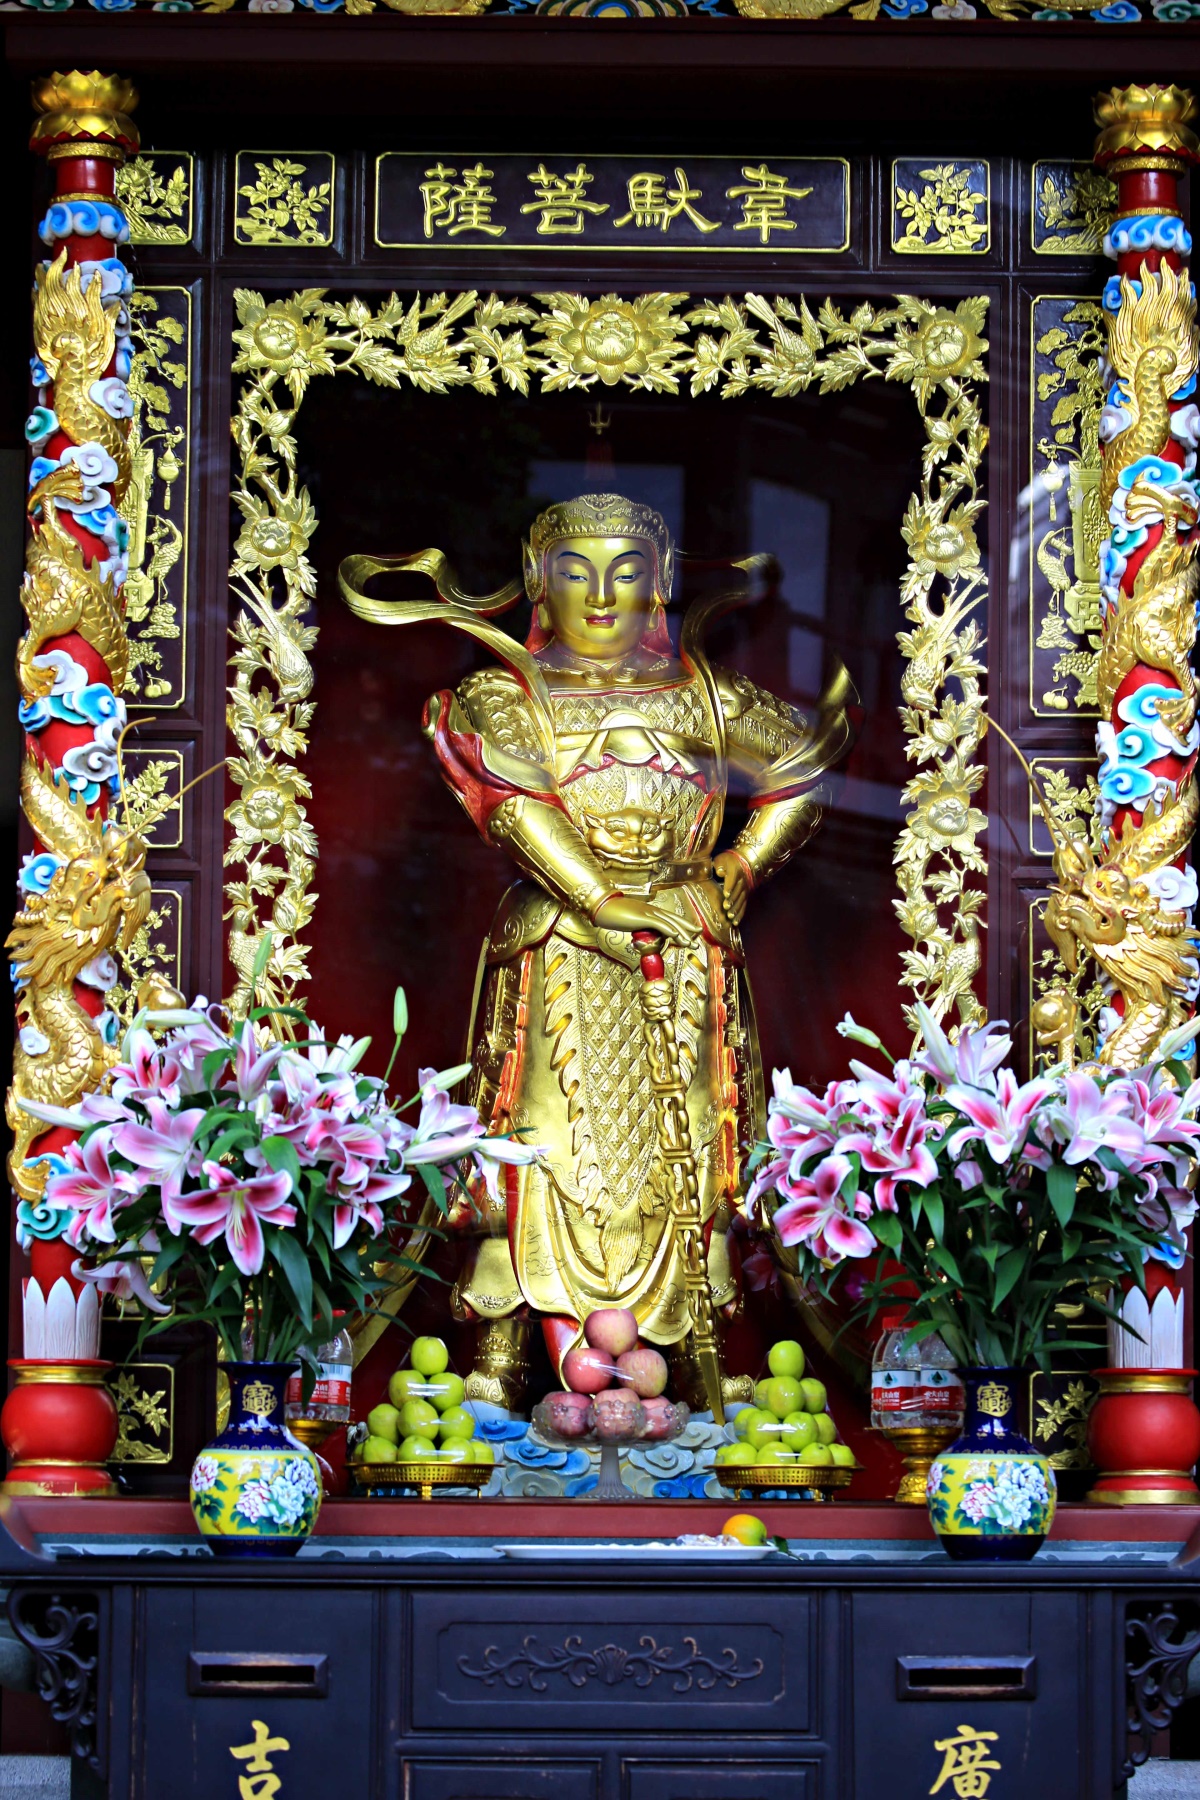 ゆんフリー写真素材集 : No. 13671 六榕寺 仏像 [中国 / 広州]